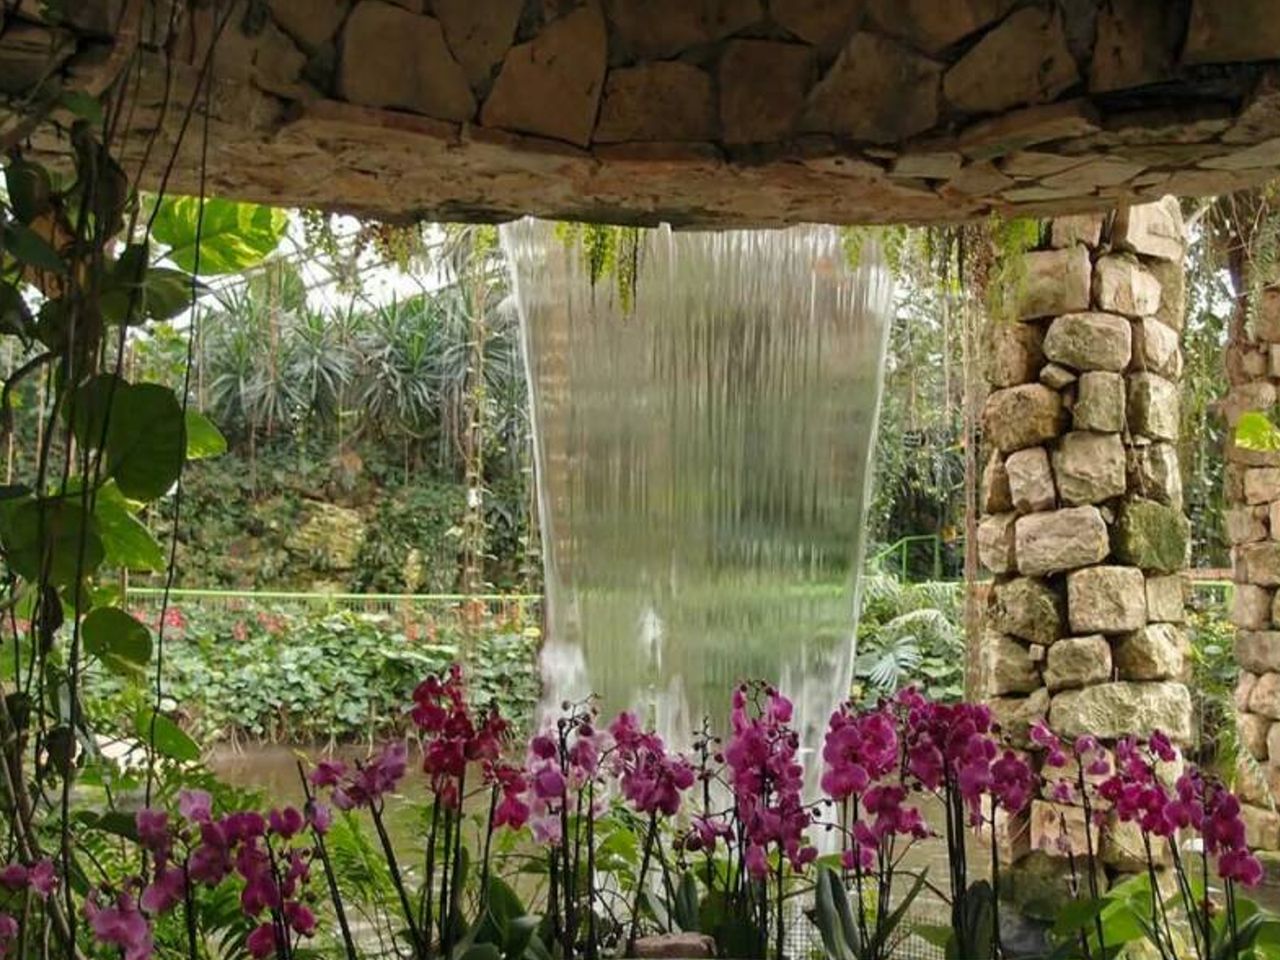 Парк орхидей “Утопия”, парк роз Ротшильда + музей | Цена 500€, отзывы, описание экскурсии